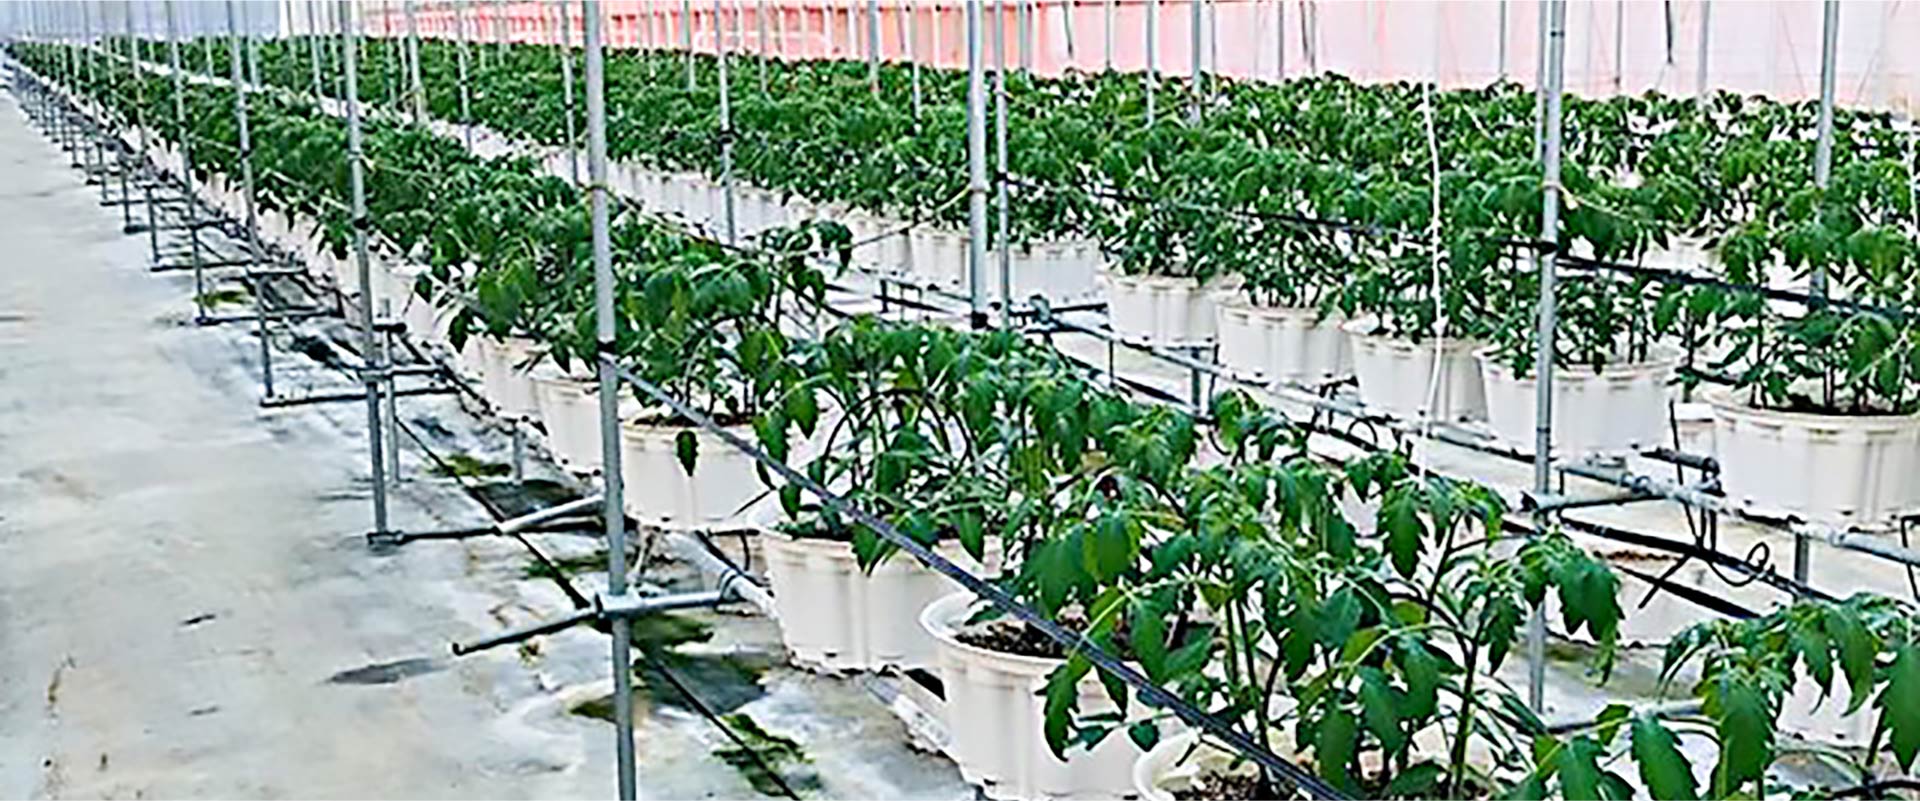 栽培施設内外の各種環境データ取得と設備の自動制御。